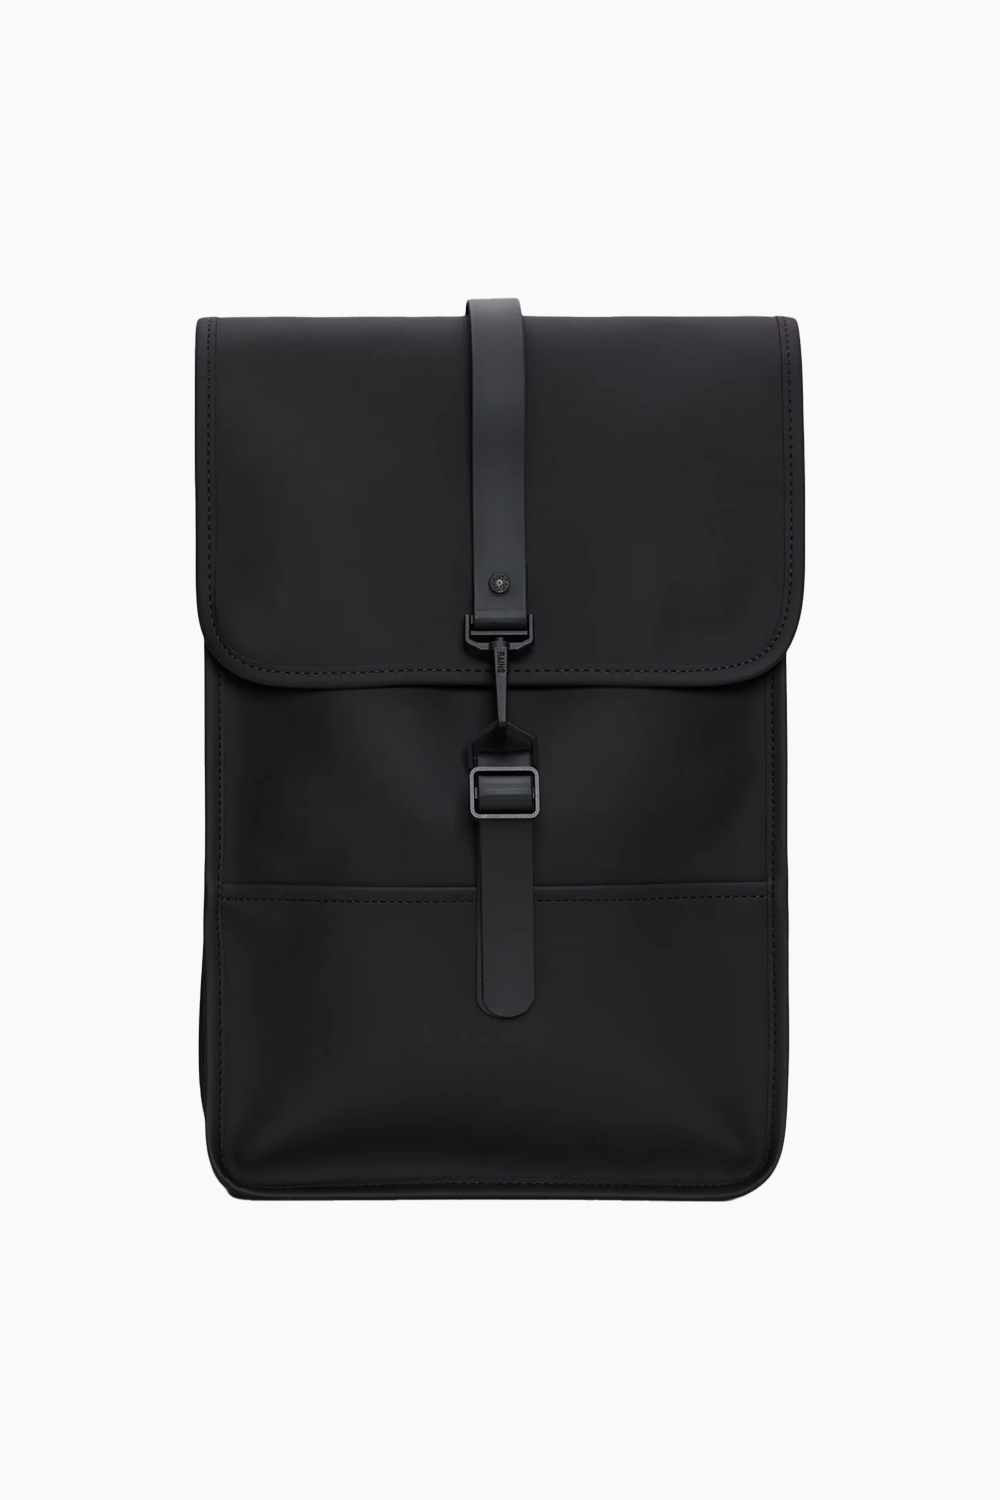 Backpack Mini W3 - Black - Rains